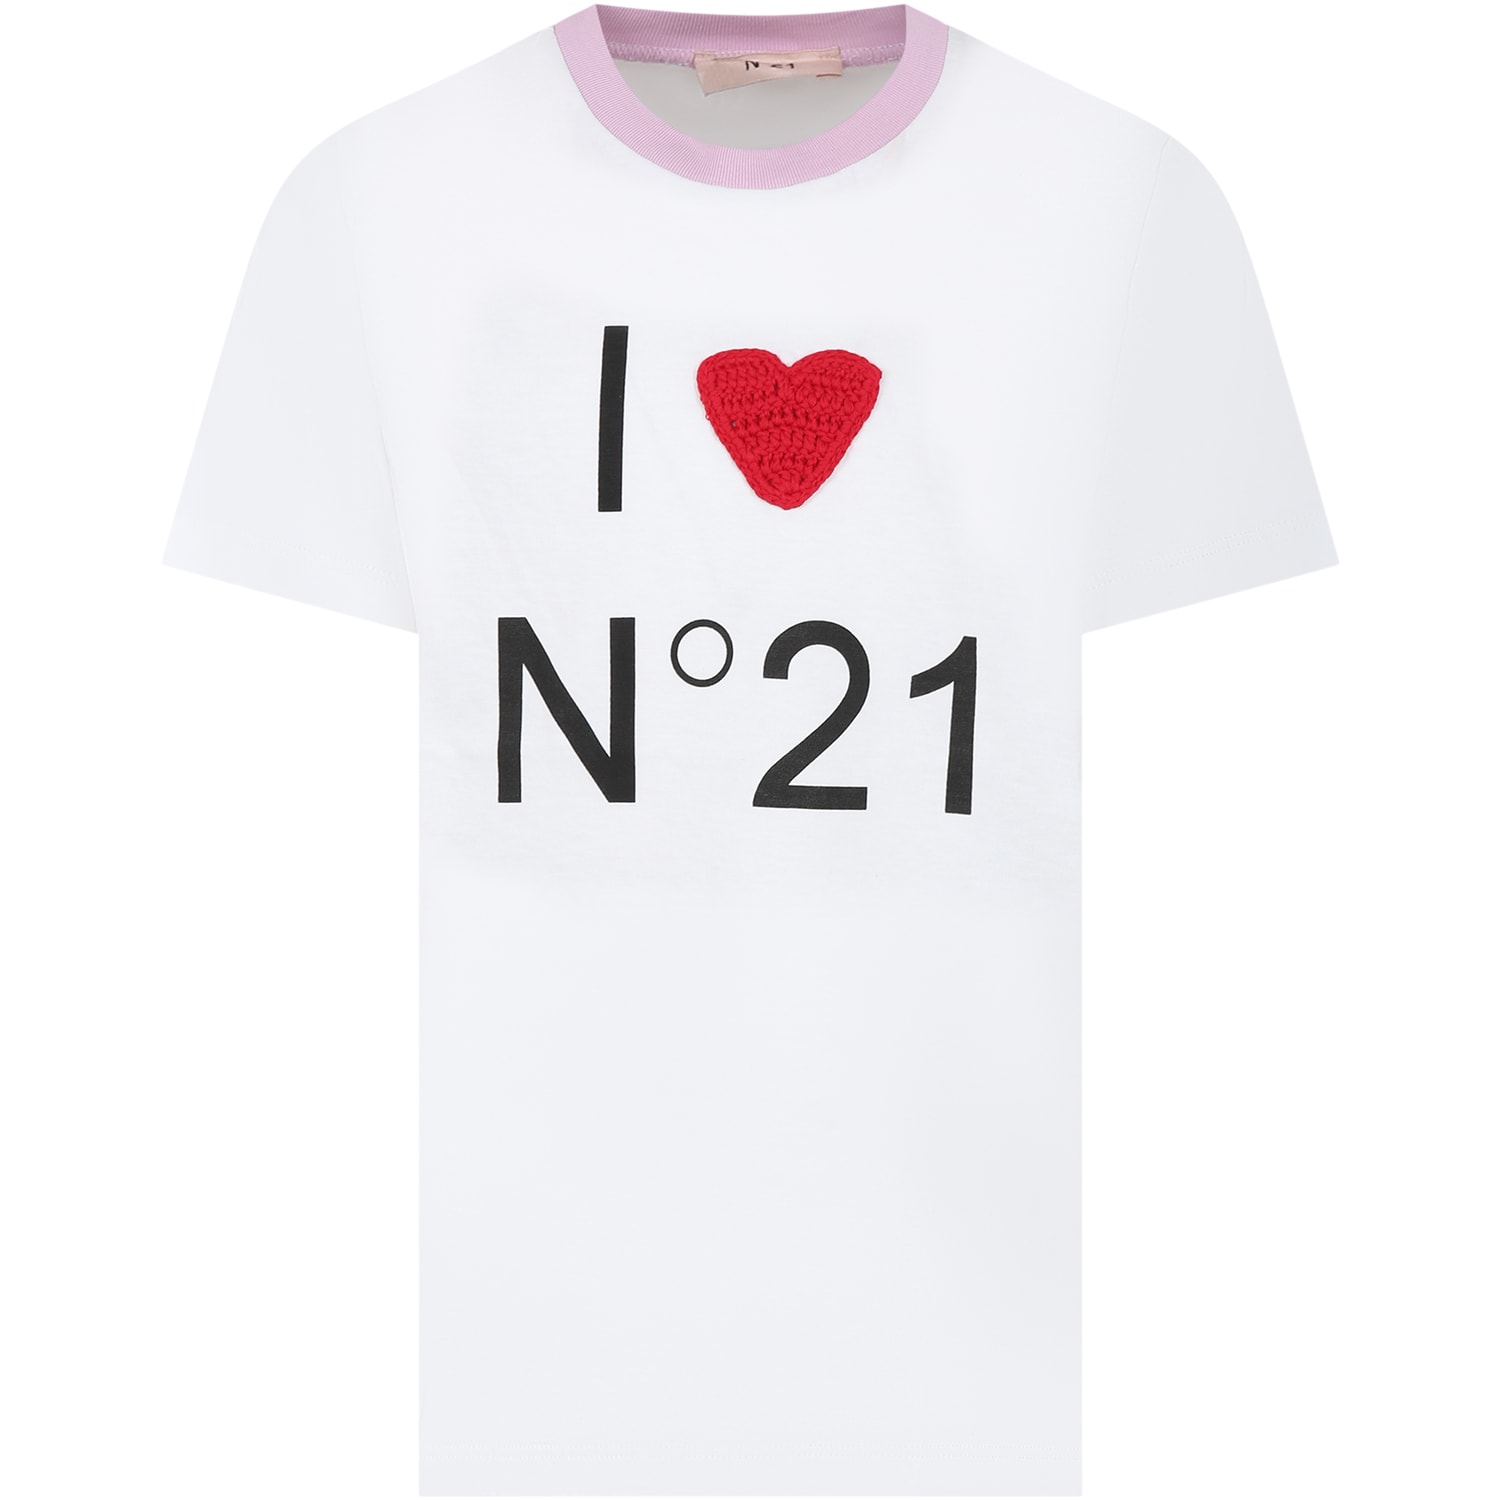 N°21 Kids' White T-shirt For Girl